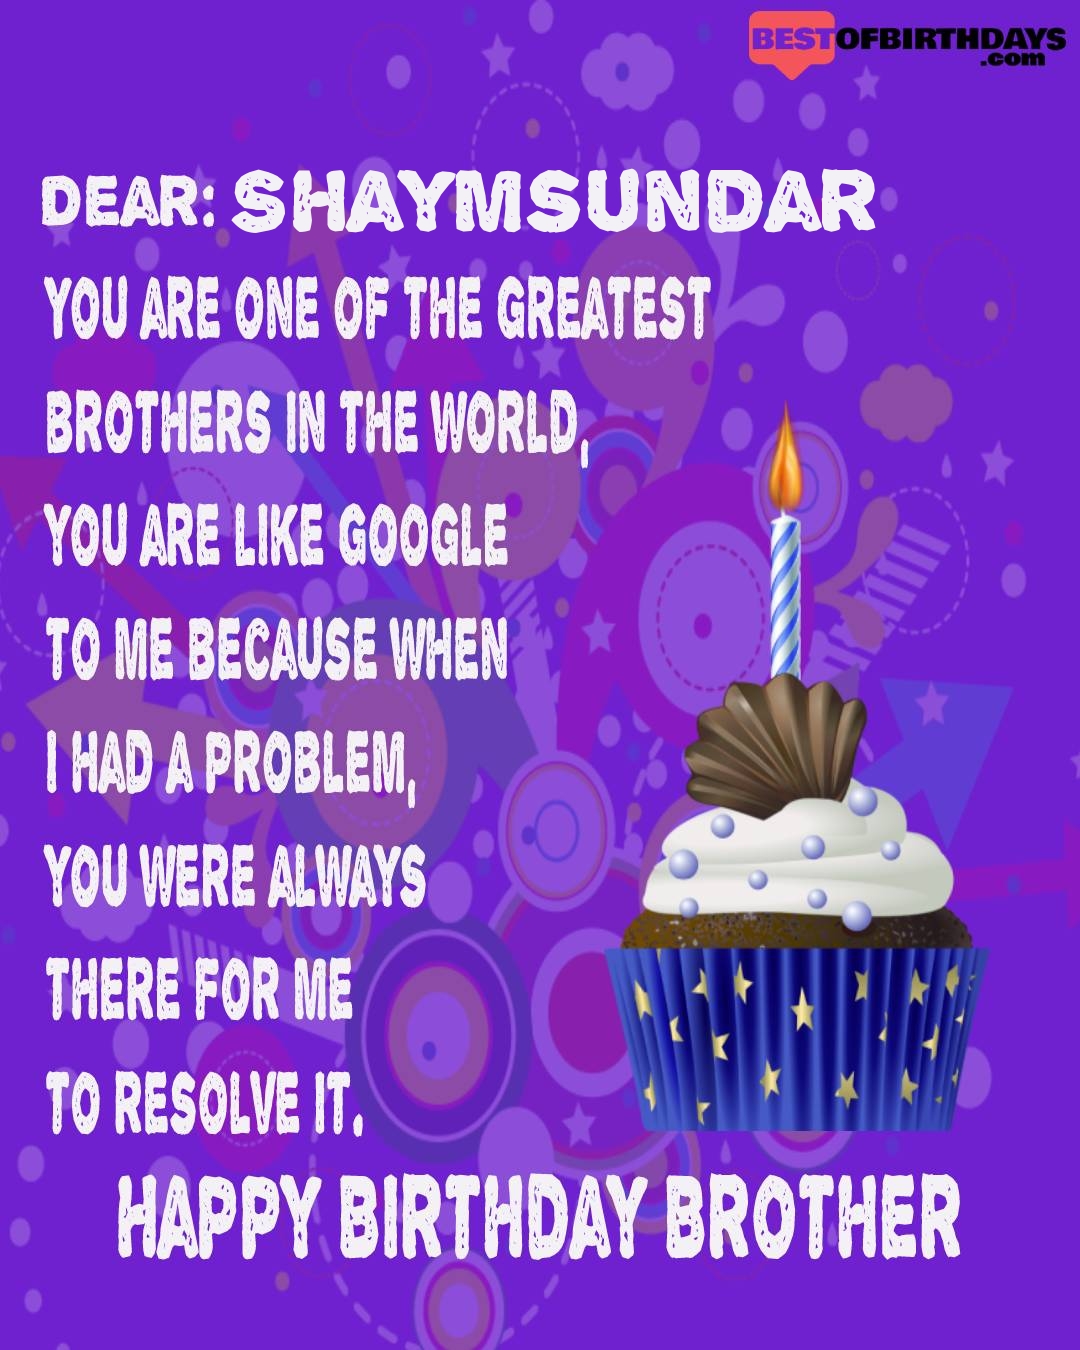 Happy birthday shaymsundar bhai brother bro